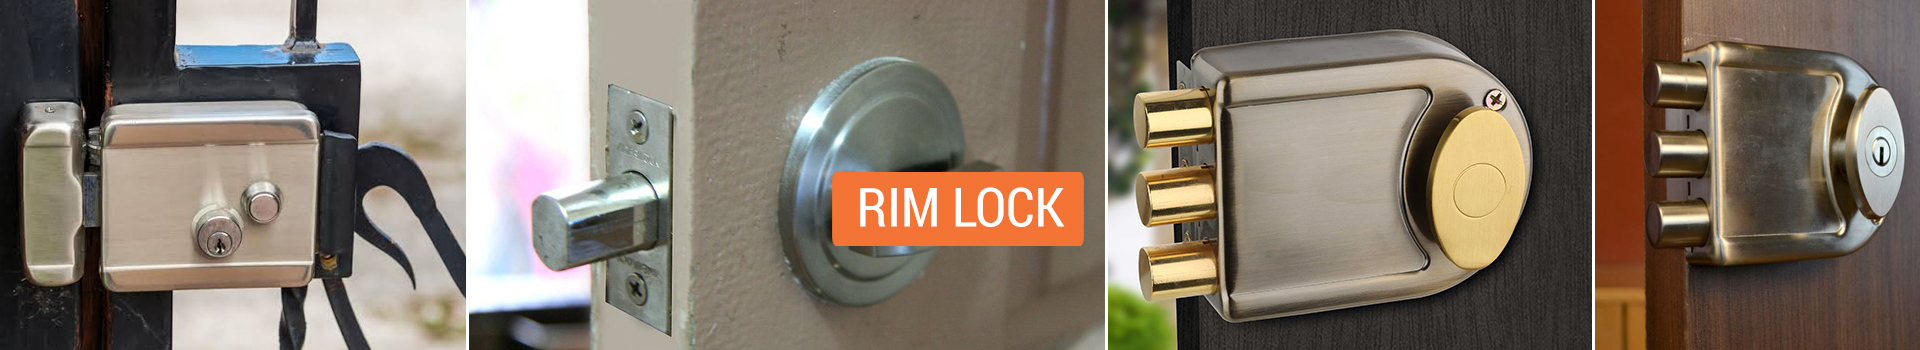 Door Rim Lock